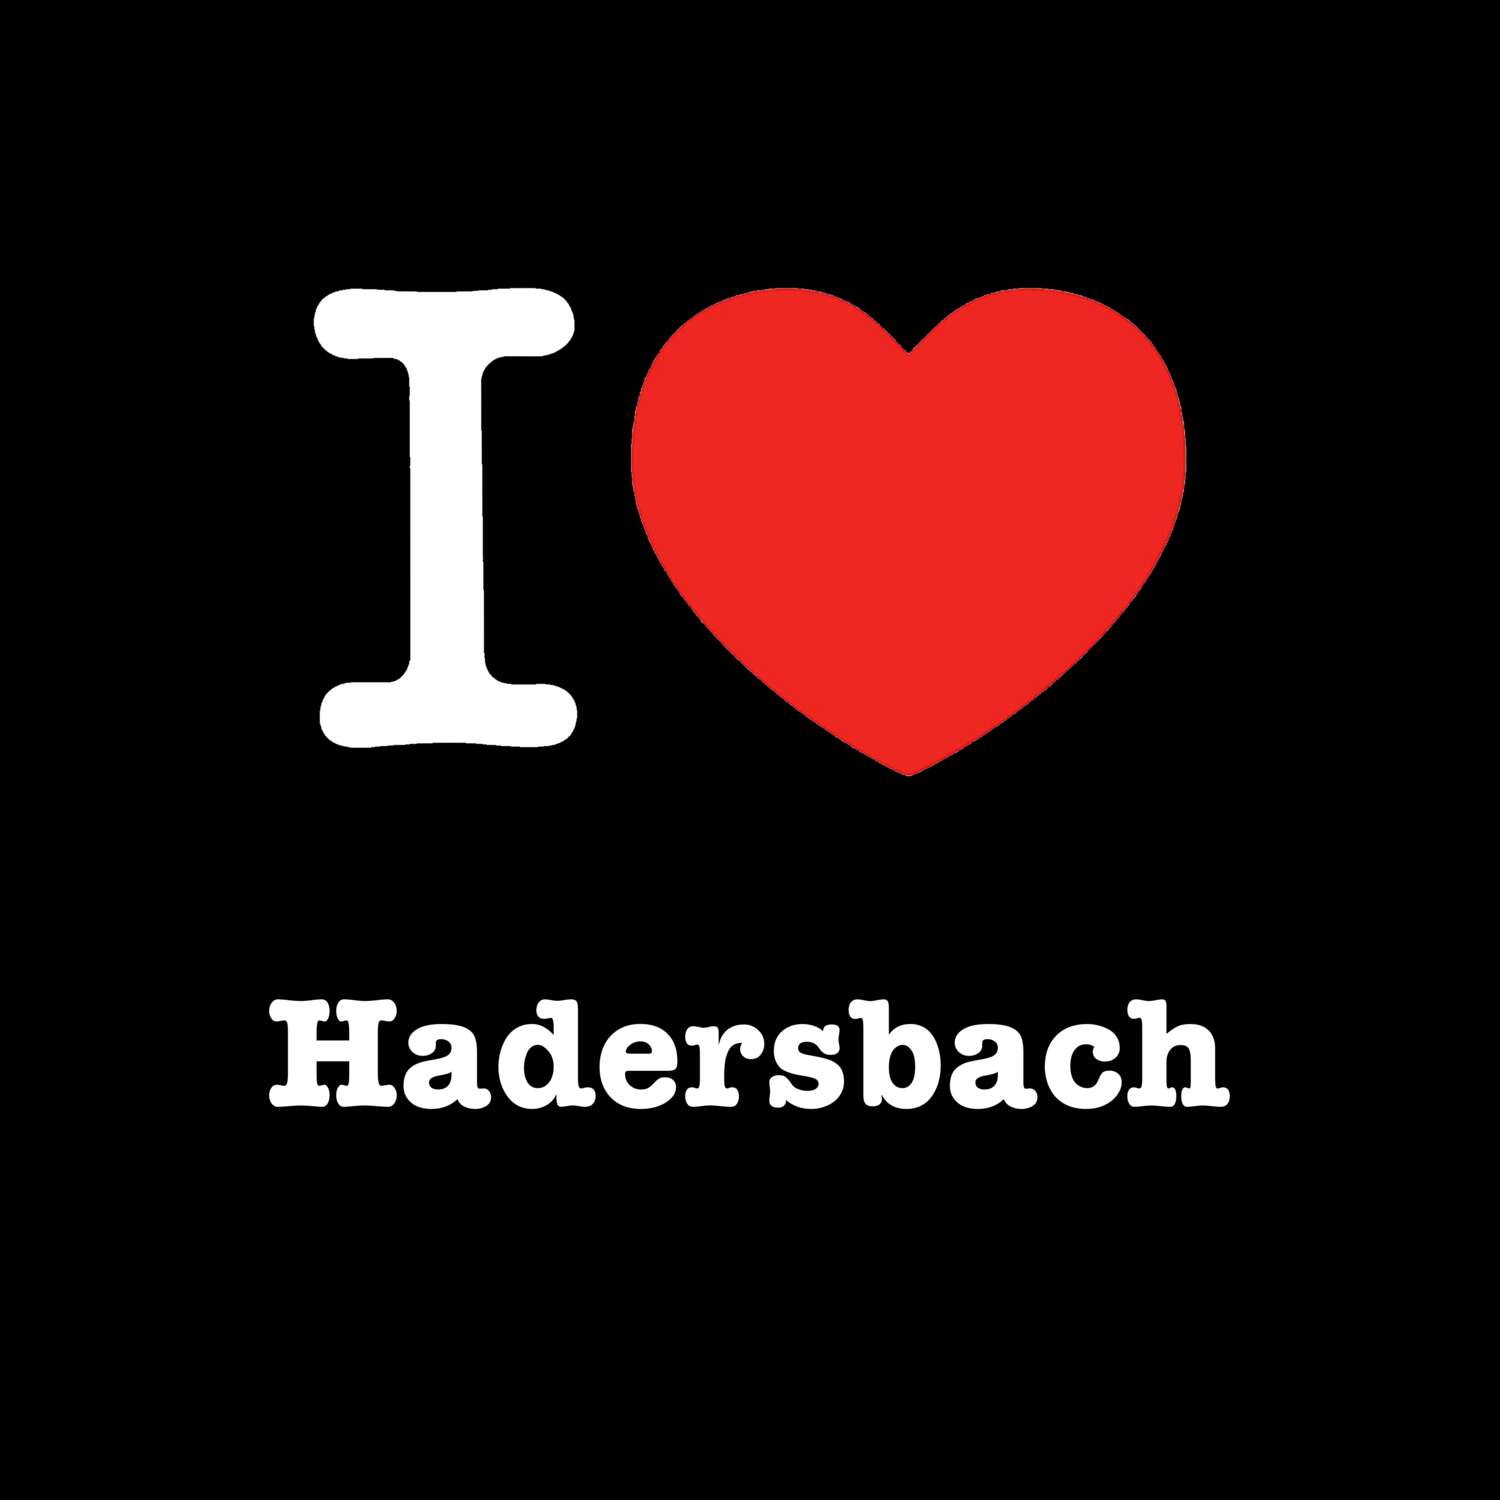 Hadersbach T-Shirt »I love«